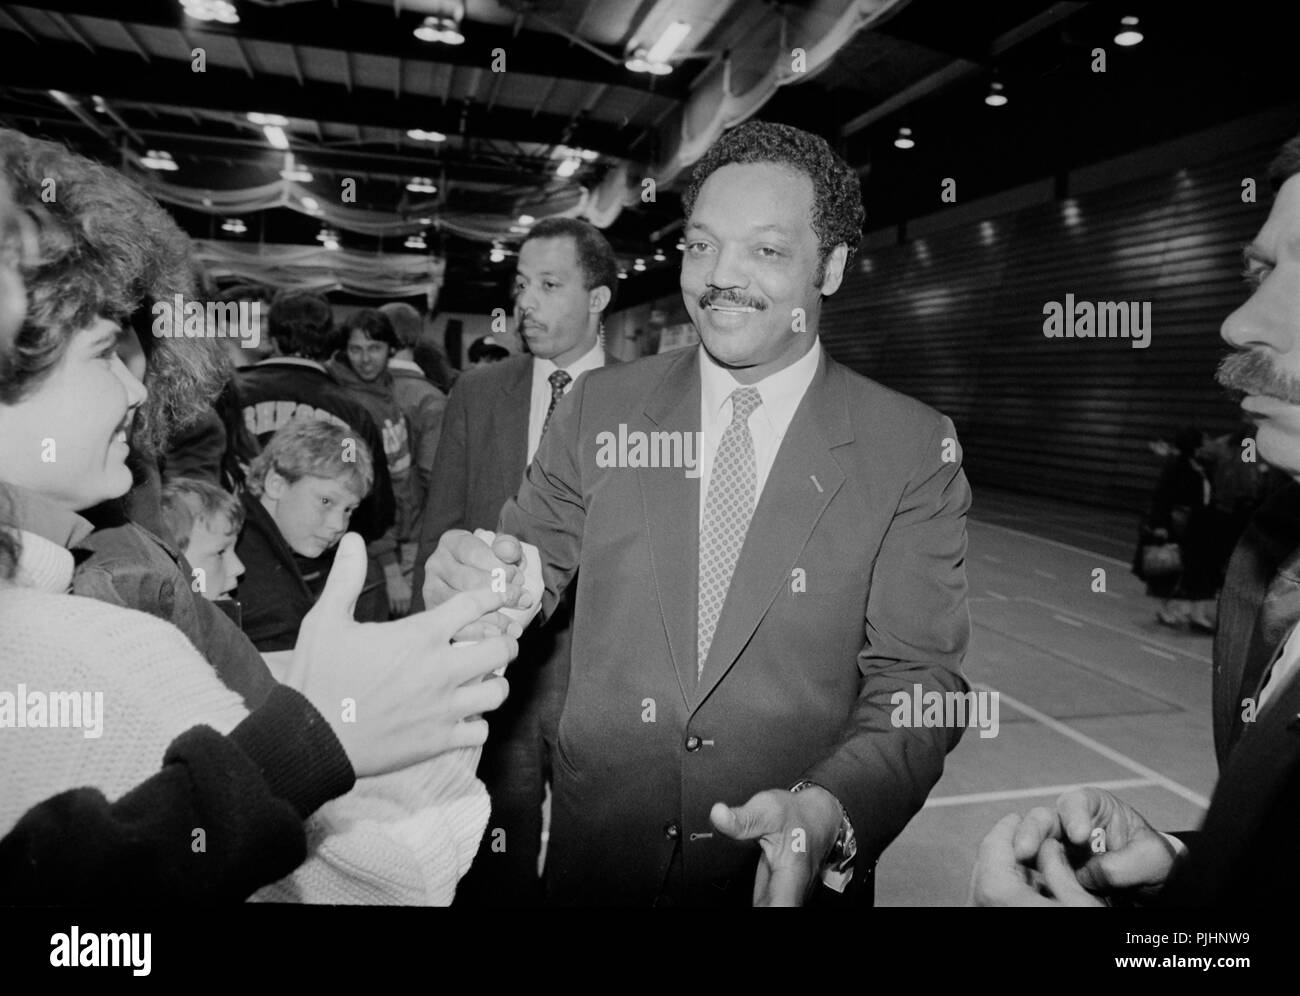 Candidat Jesse Jackson des campagnes pour le président des États-Unis, dans le Wisconsin en 1988. Banque D'Images